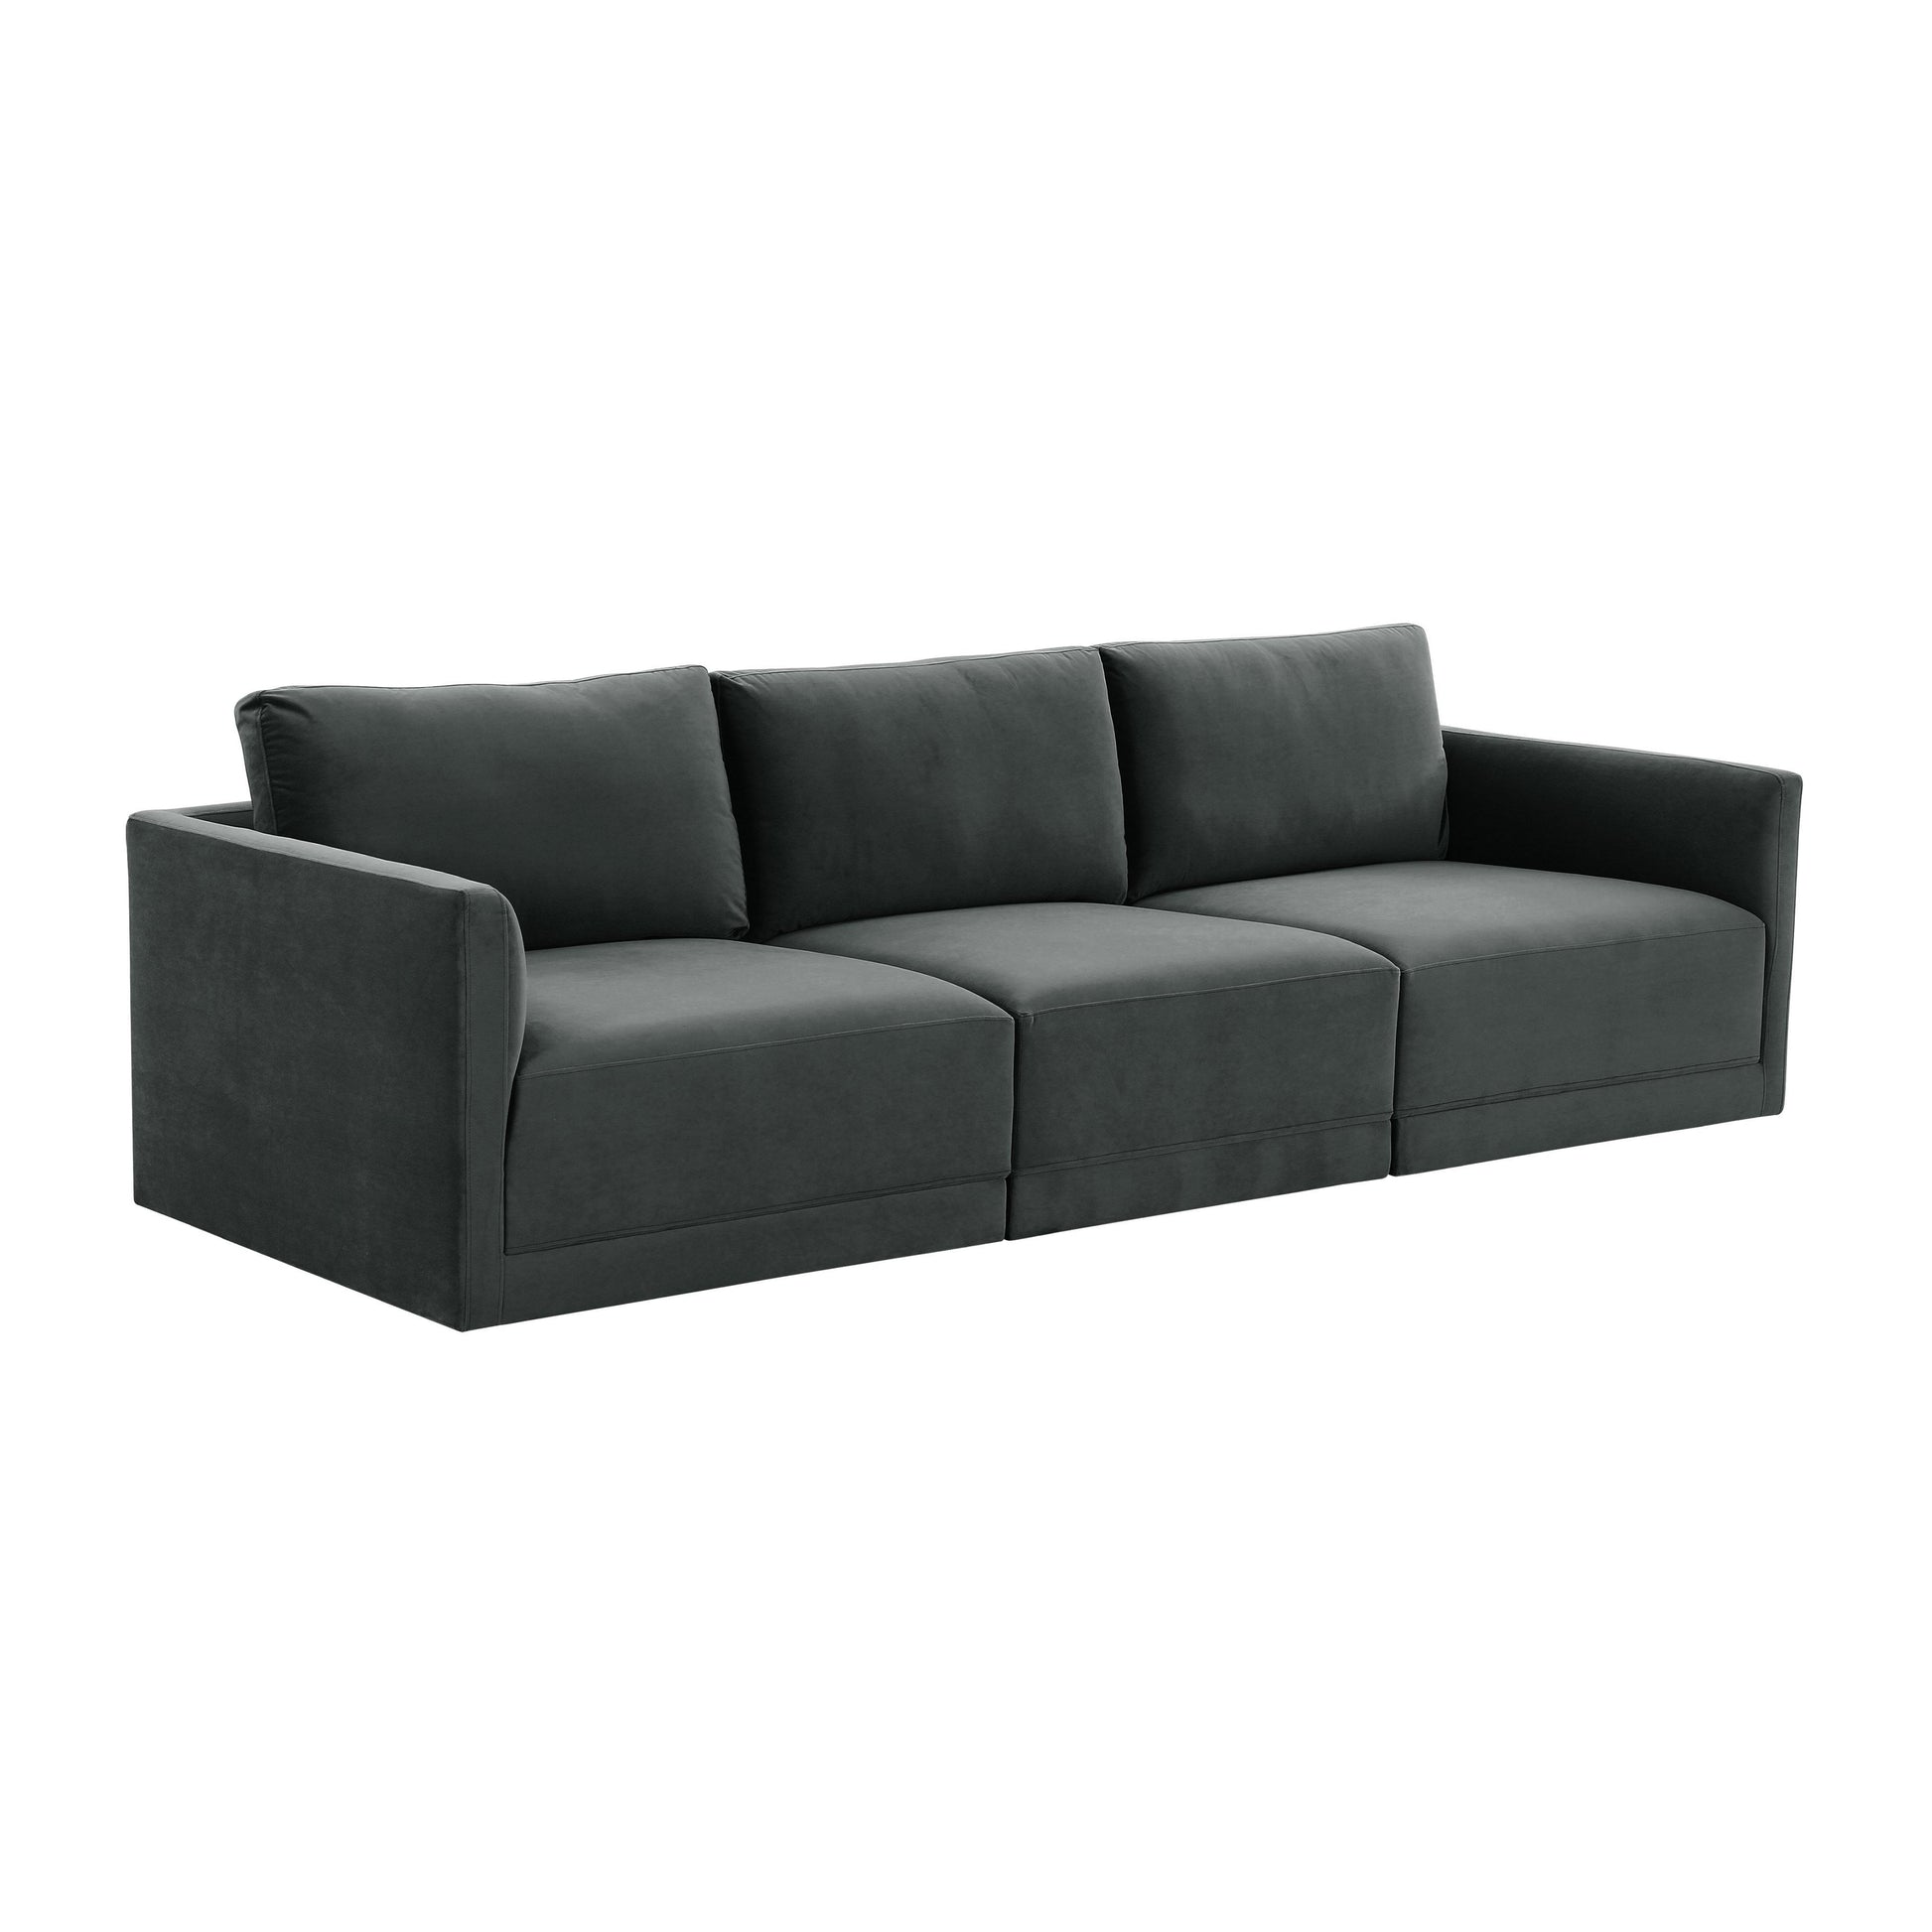 Tov Furniture Willow Charcoal Modular Sofa